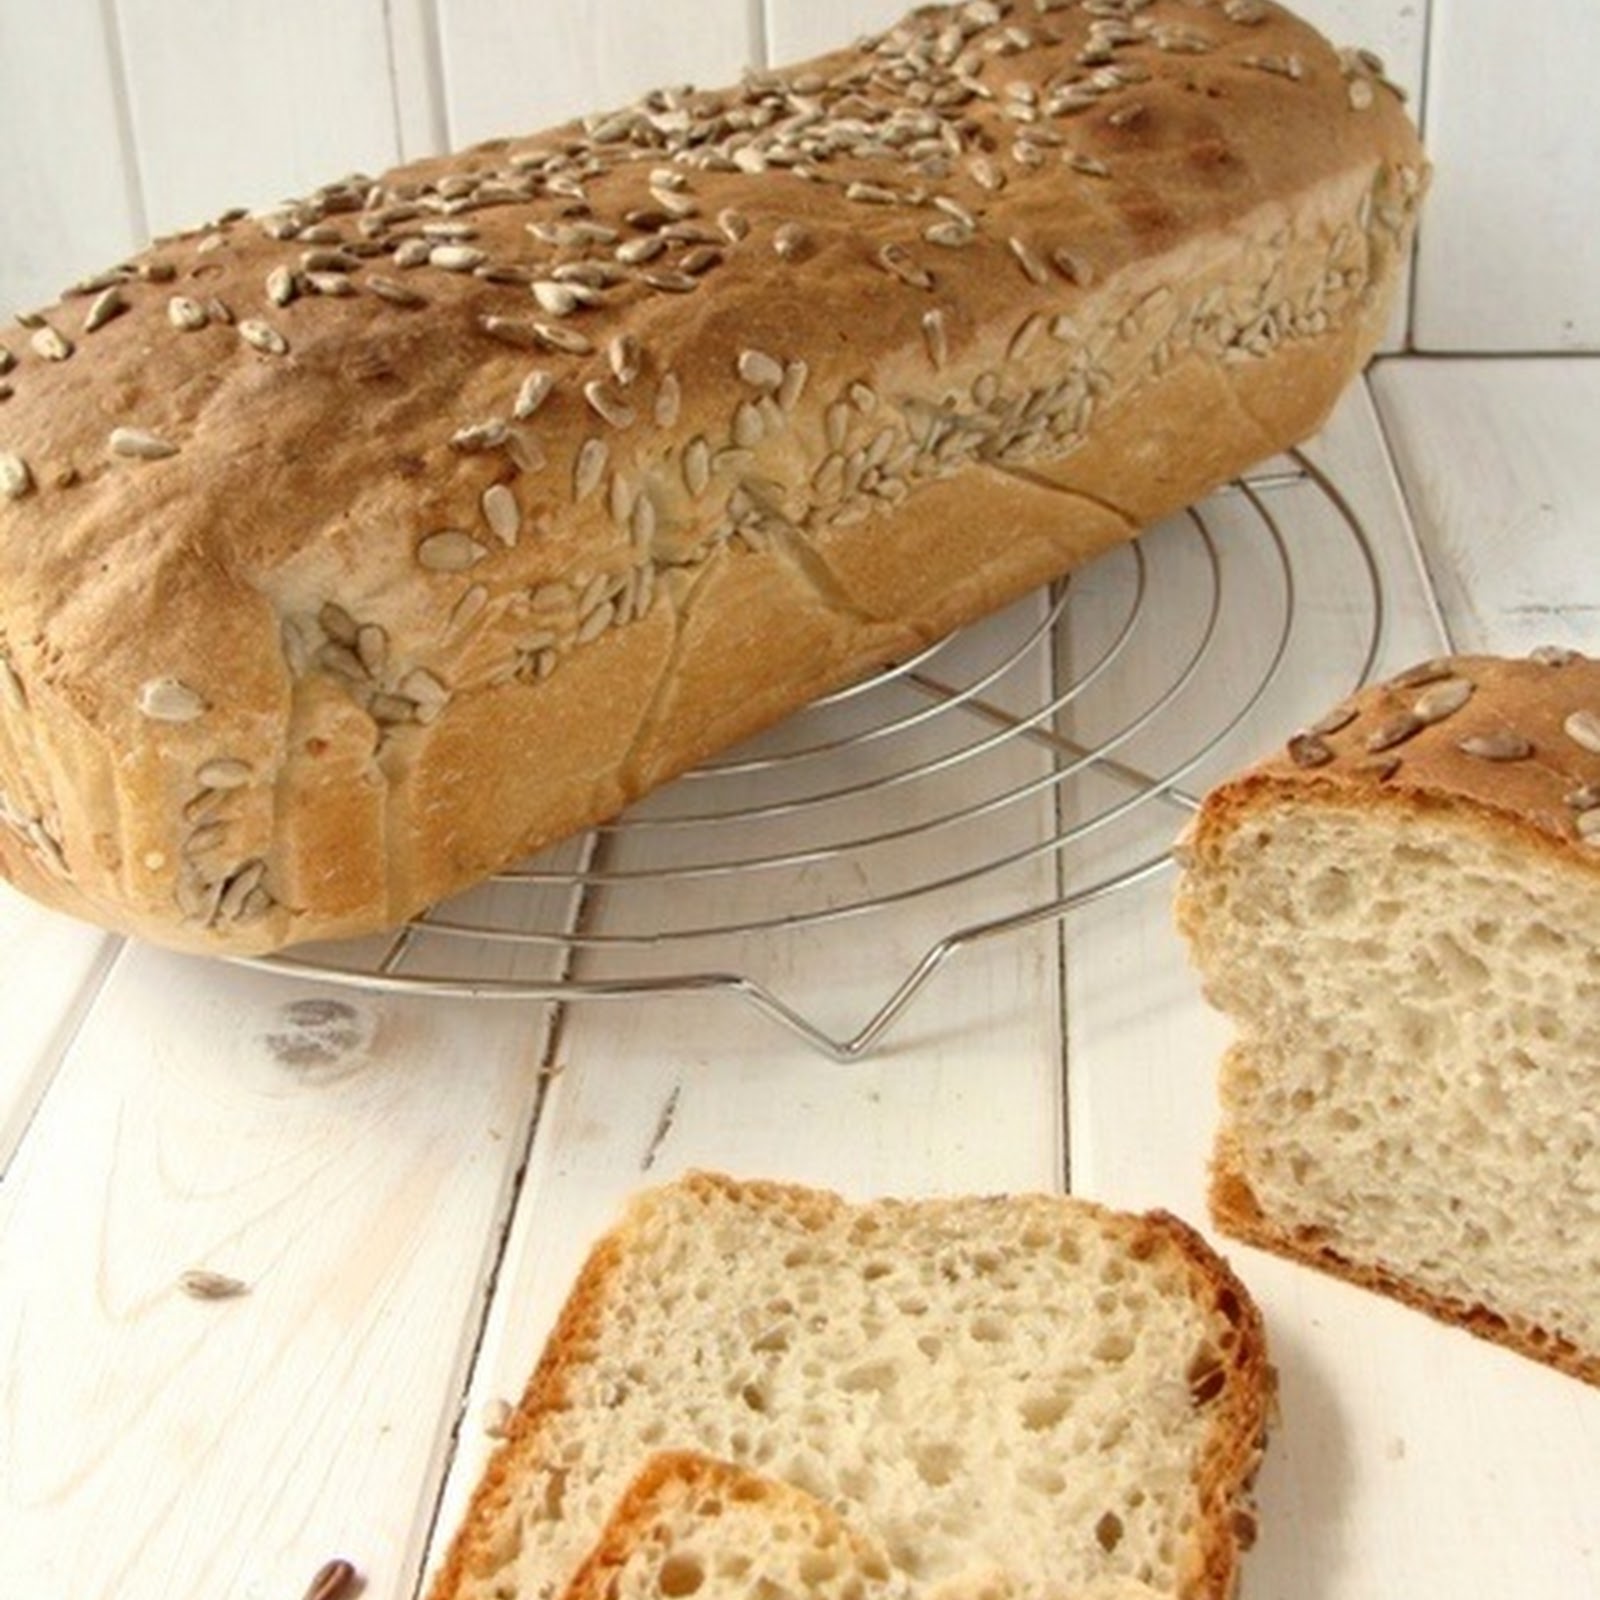 Chleb pszenno - żytni ze słonecznikiem